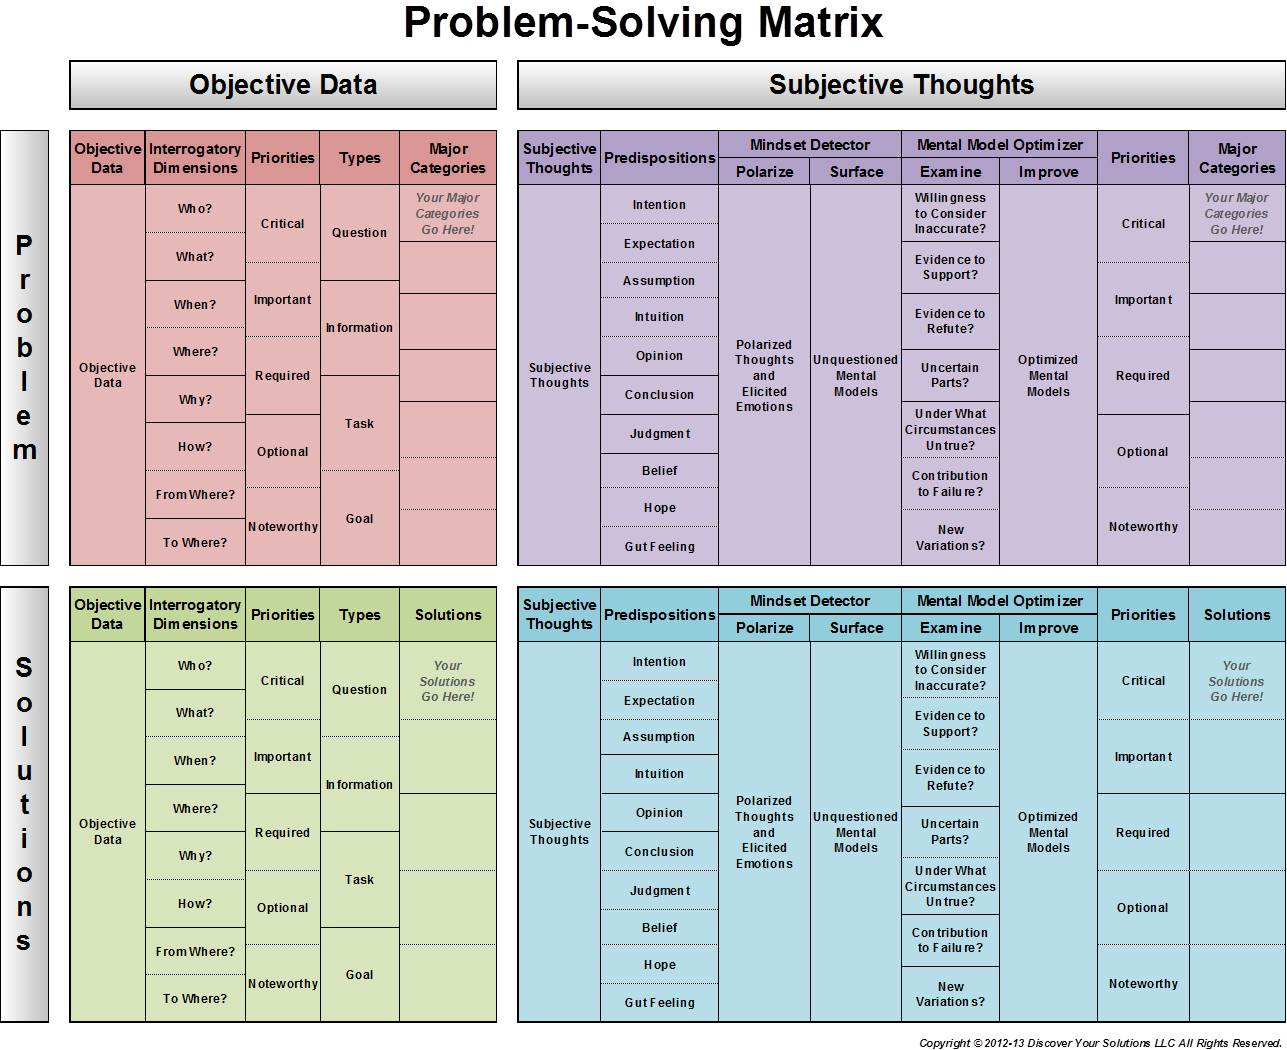 Problem-Solving Matrix